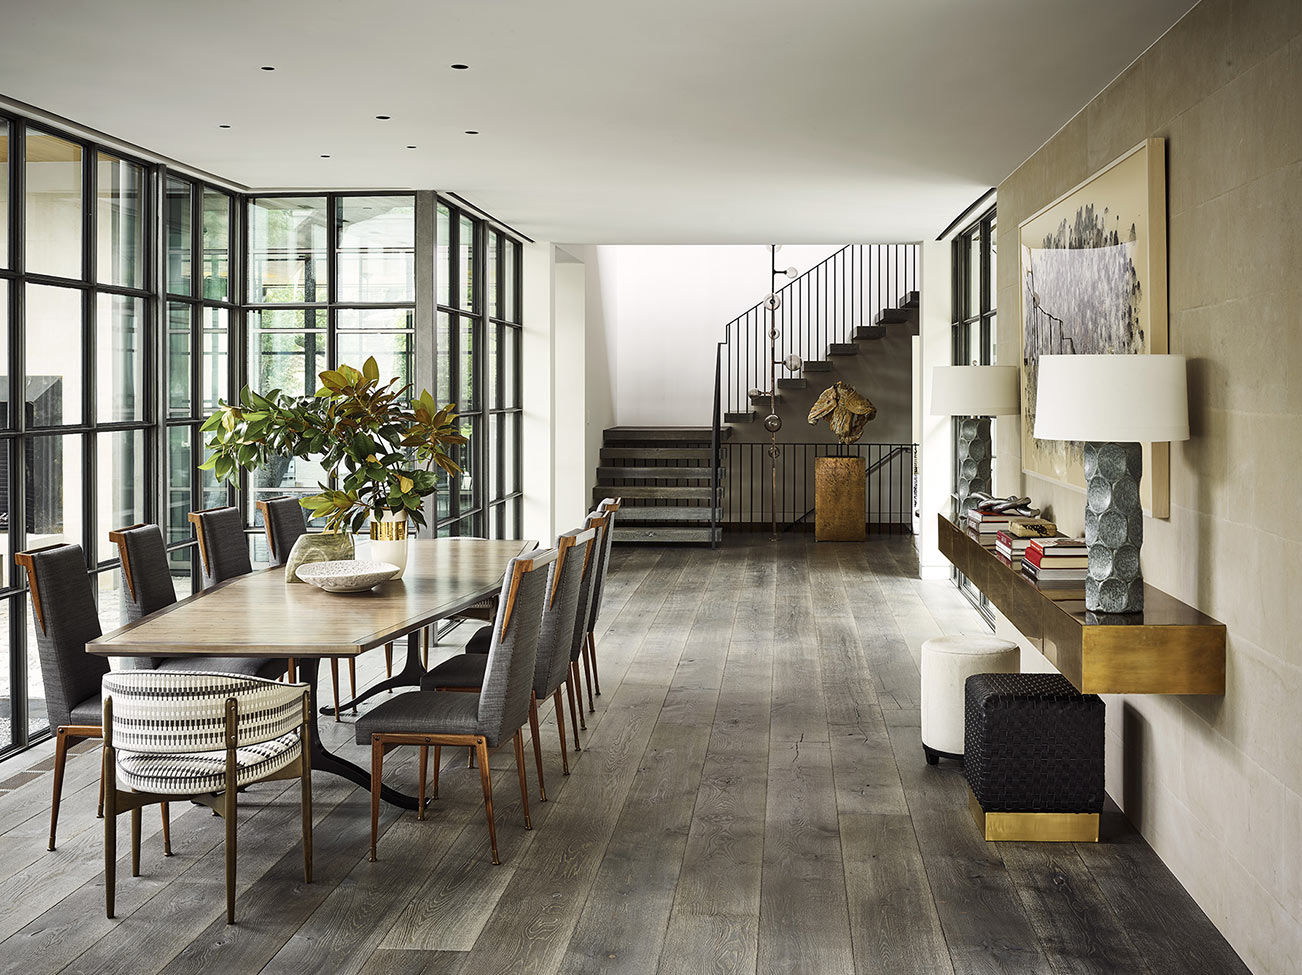 Une salle à manger au plancher de bois gris avec des fenêtres à carreaux métalliques pleine longueur et un escalier élégant.